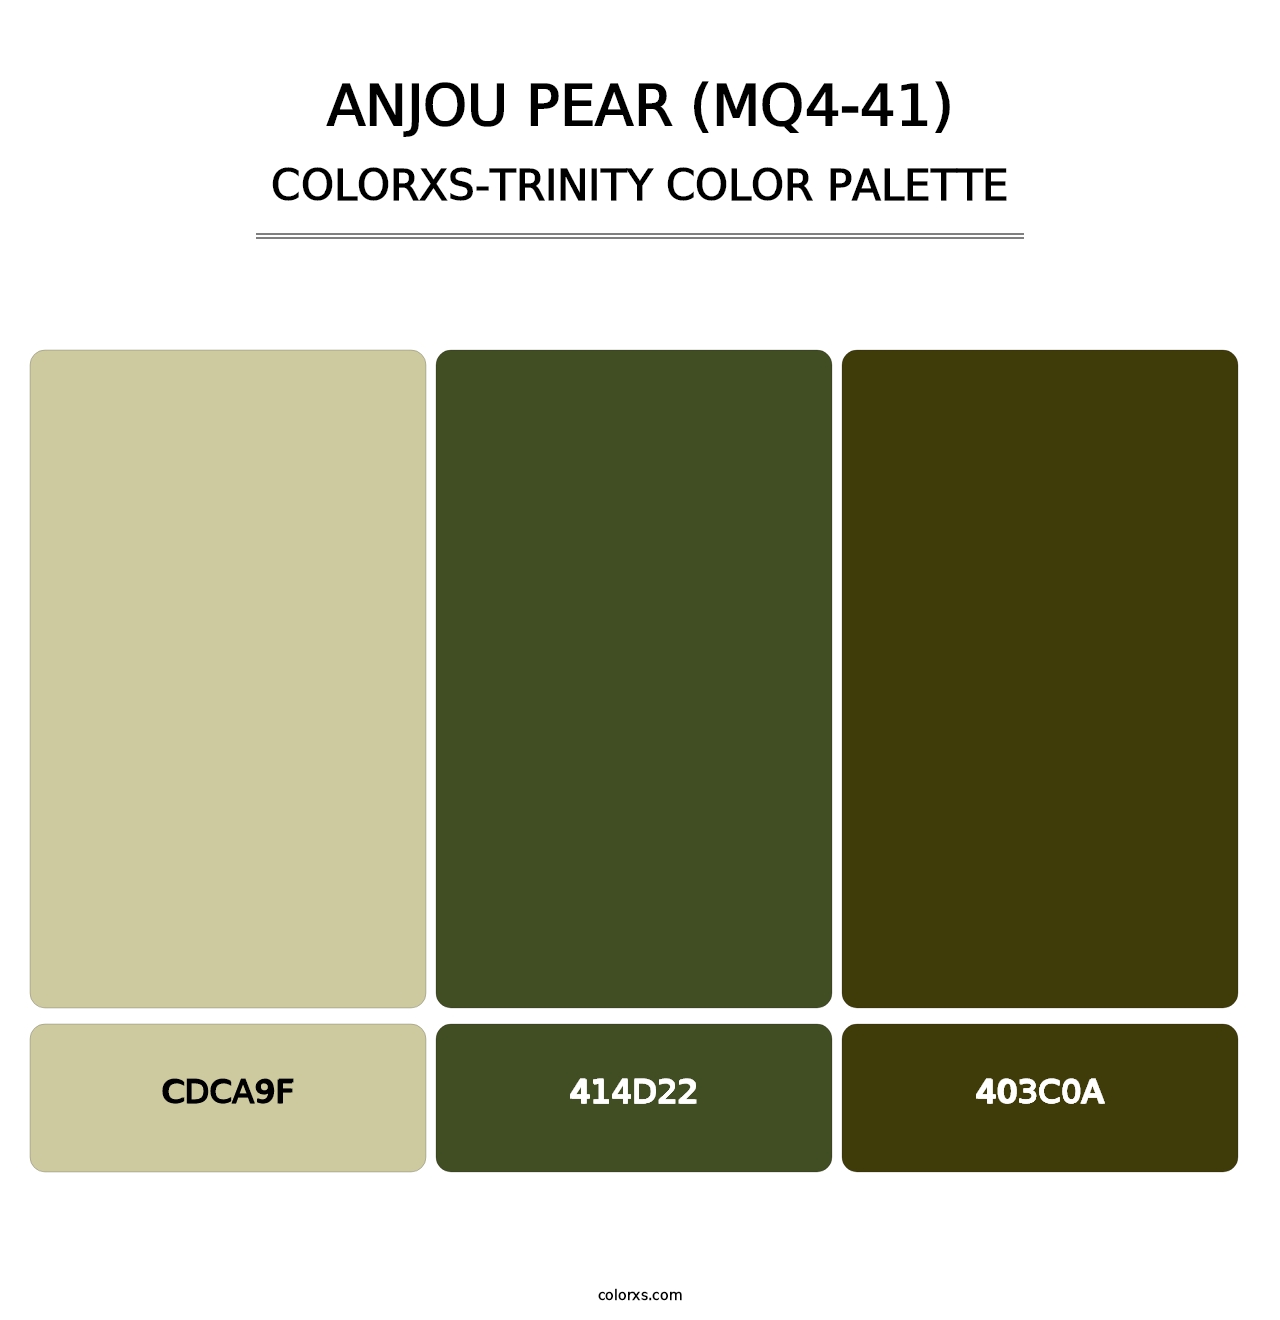 Anjou Pear (MQ4-41) - Colorxs Trinity Palette